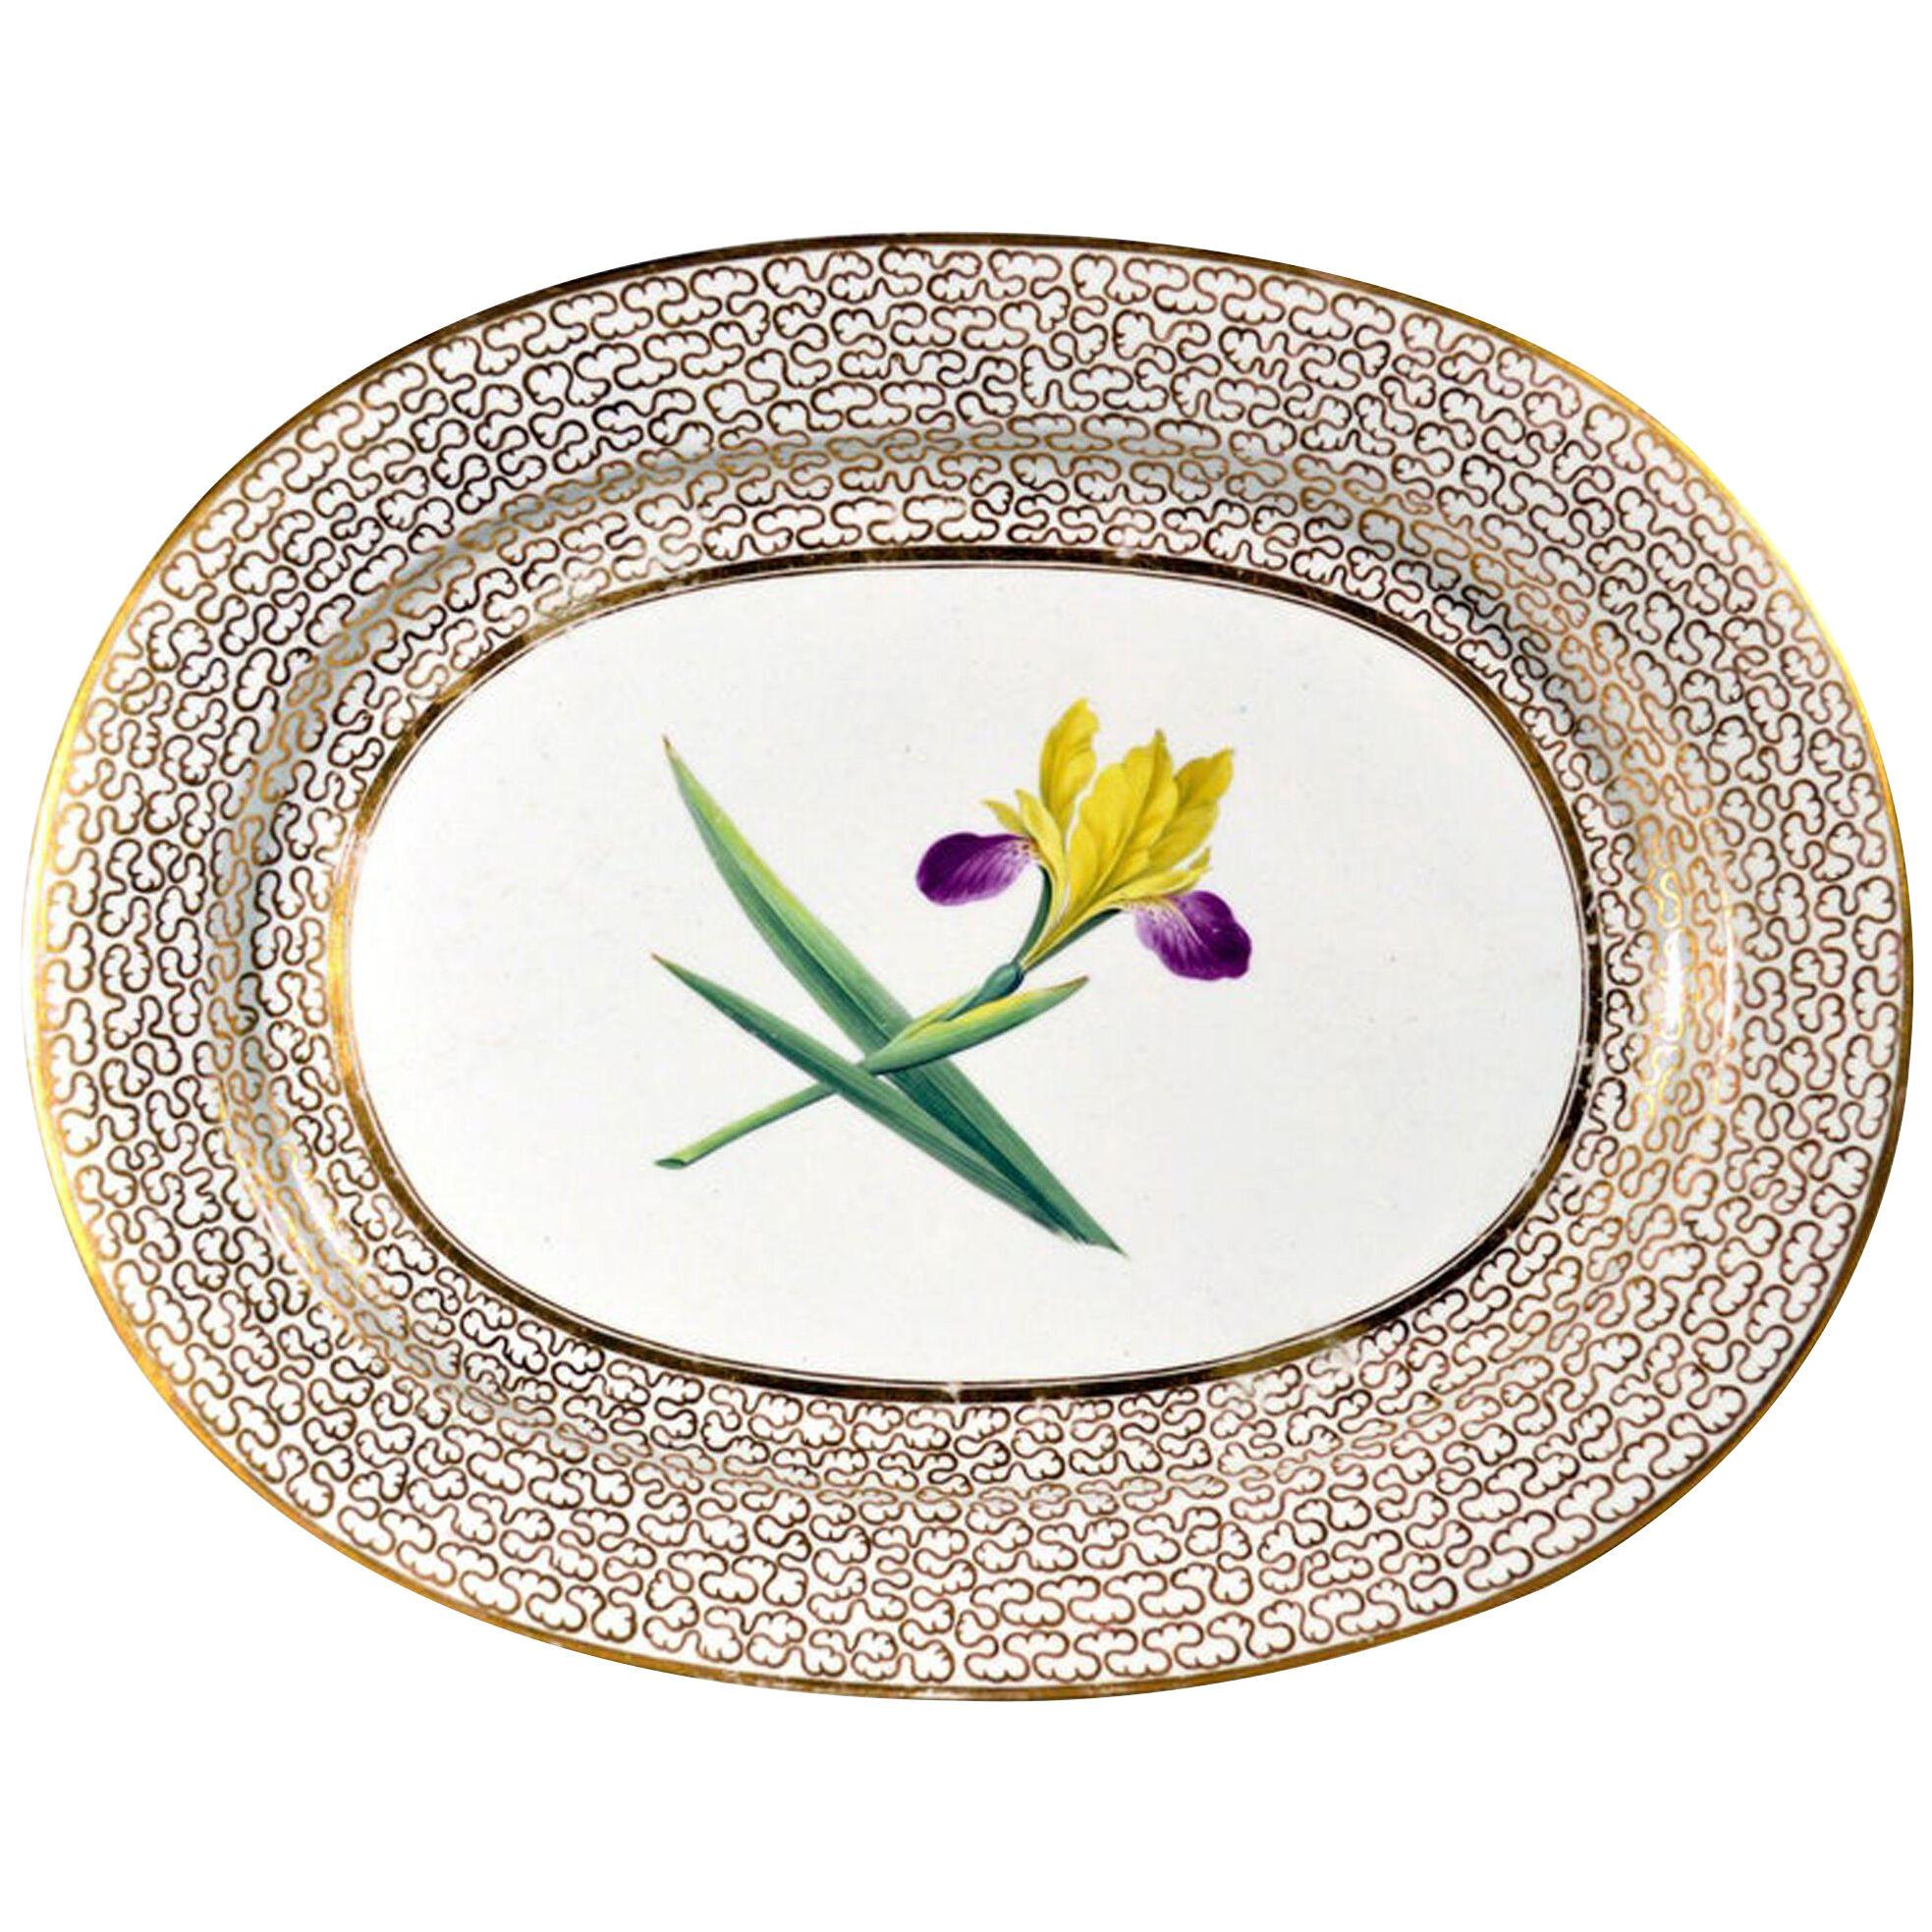 Regency English Chamberlain Worcester Porcelain Large Botanical Dish with Iris